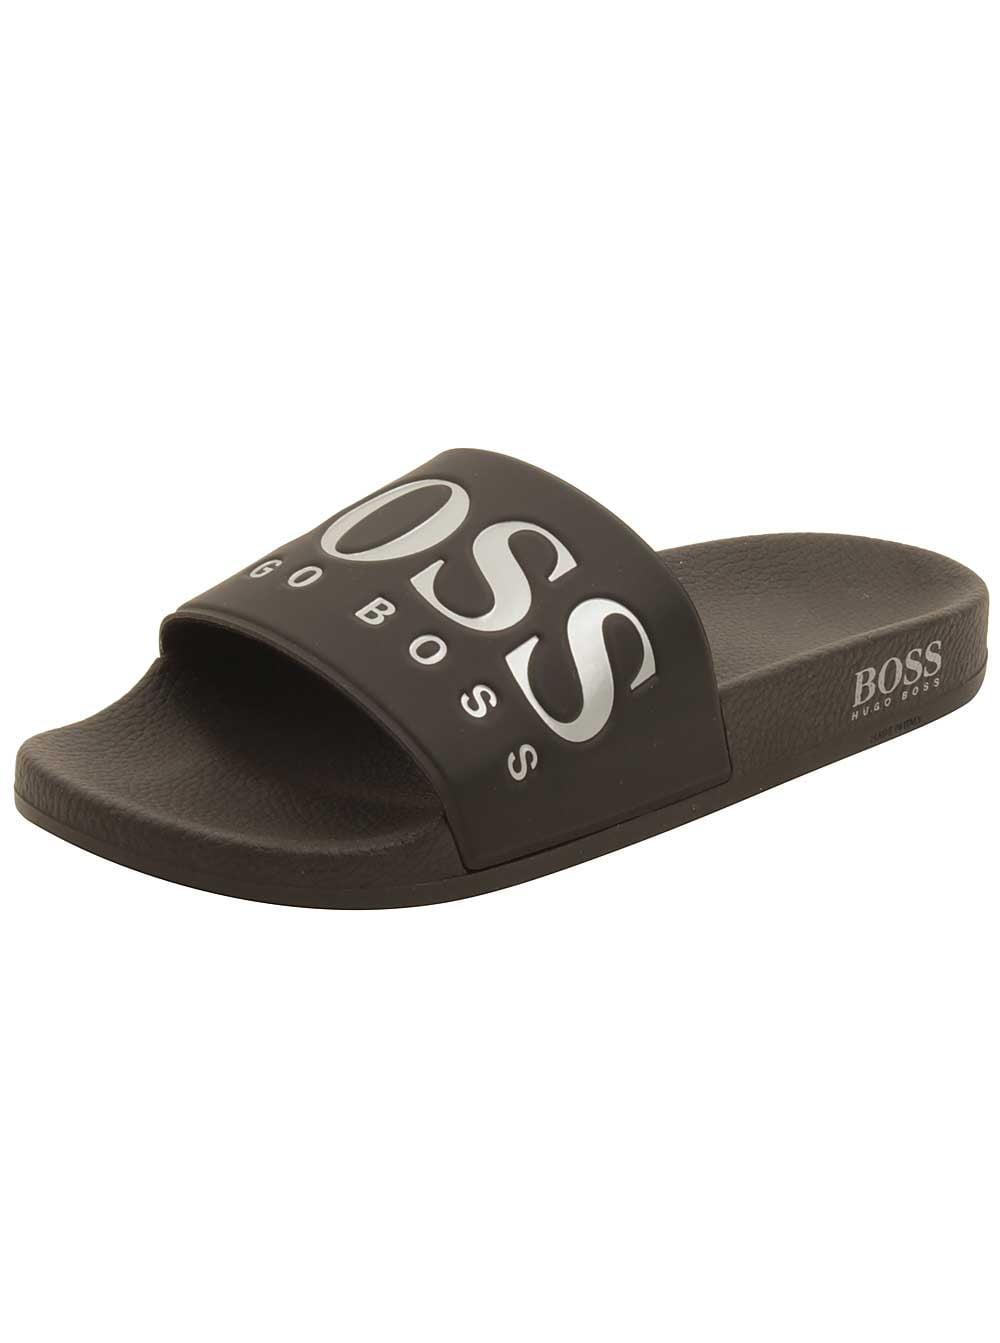 hugo boss sandals